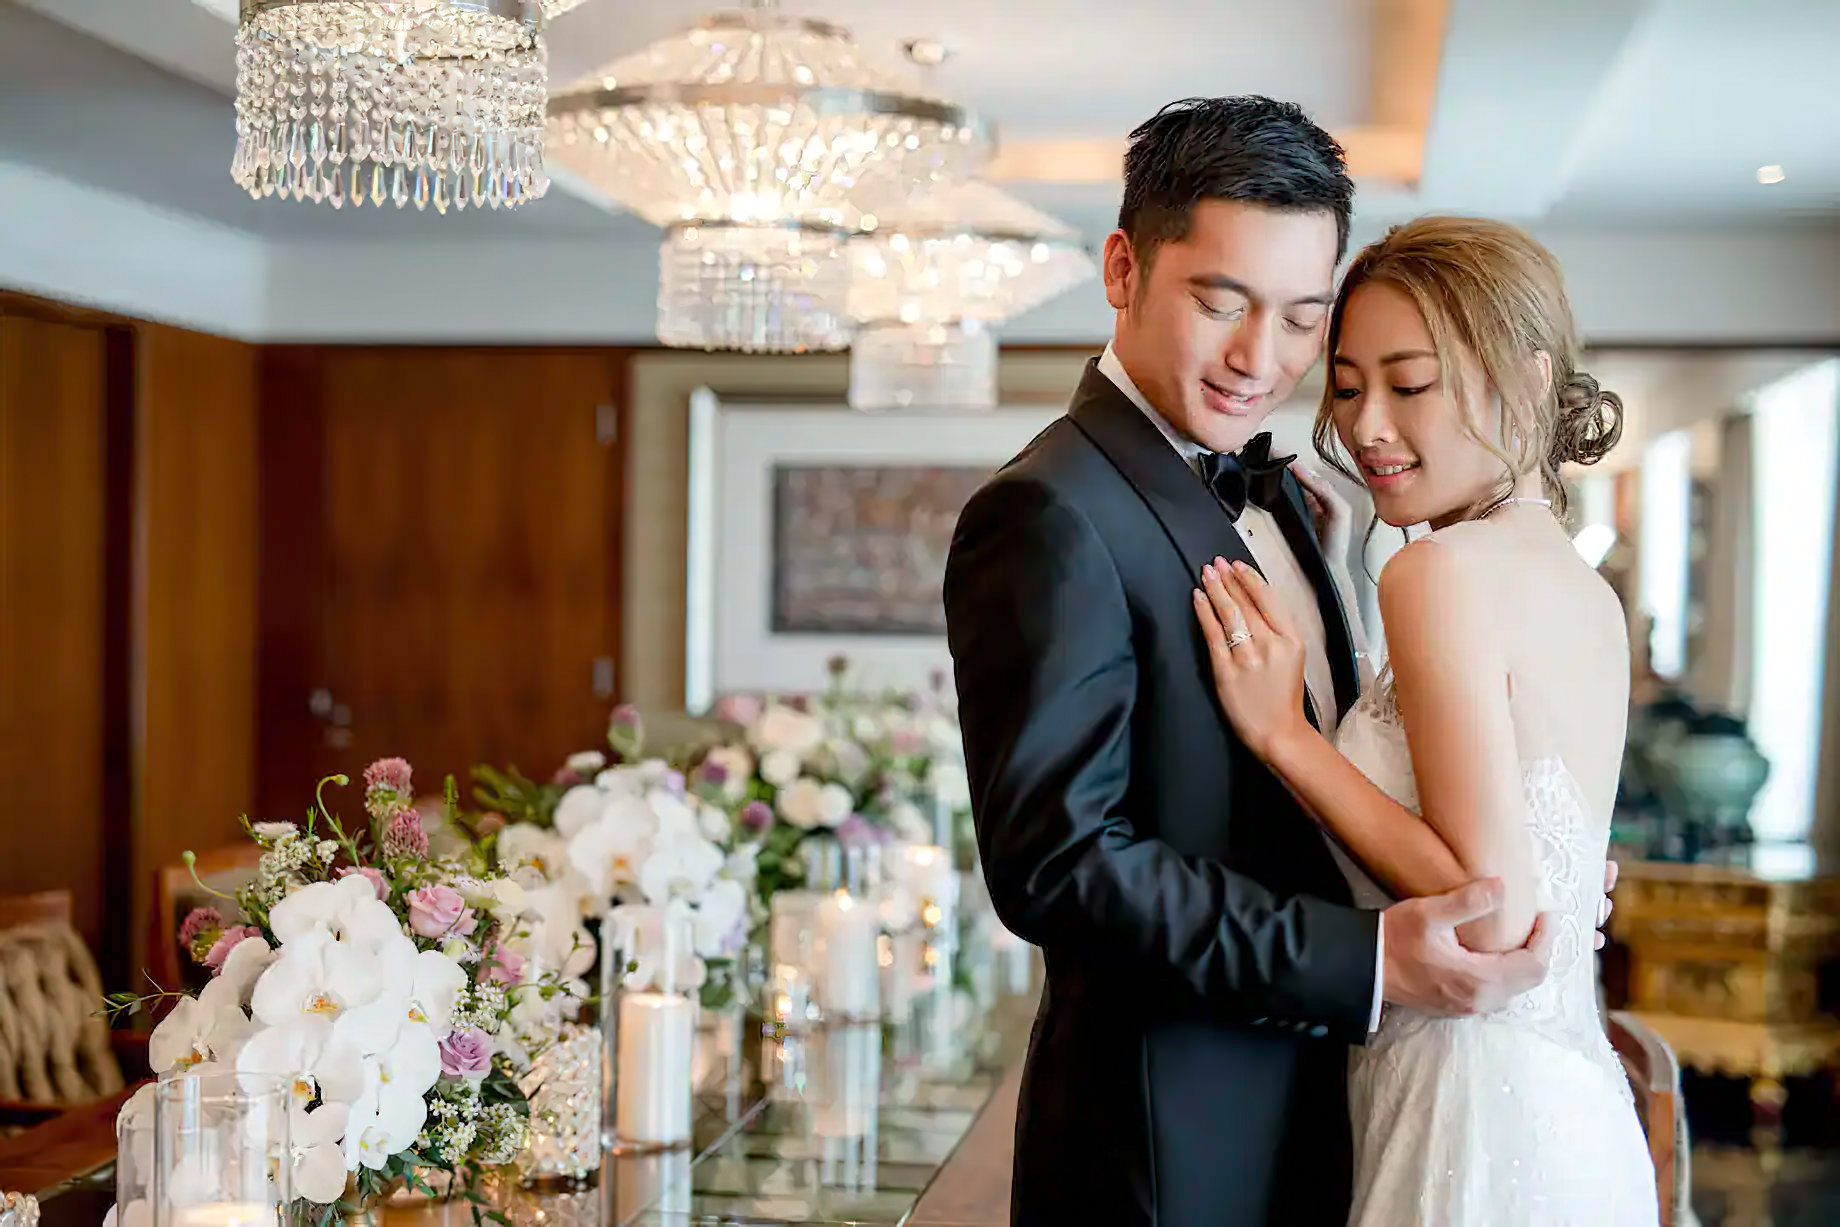 Mandarin Oriental, Hong Kong Hotel – Hong Kong, China – Wedding Couple